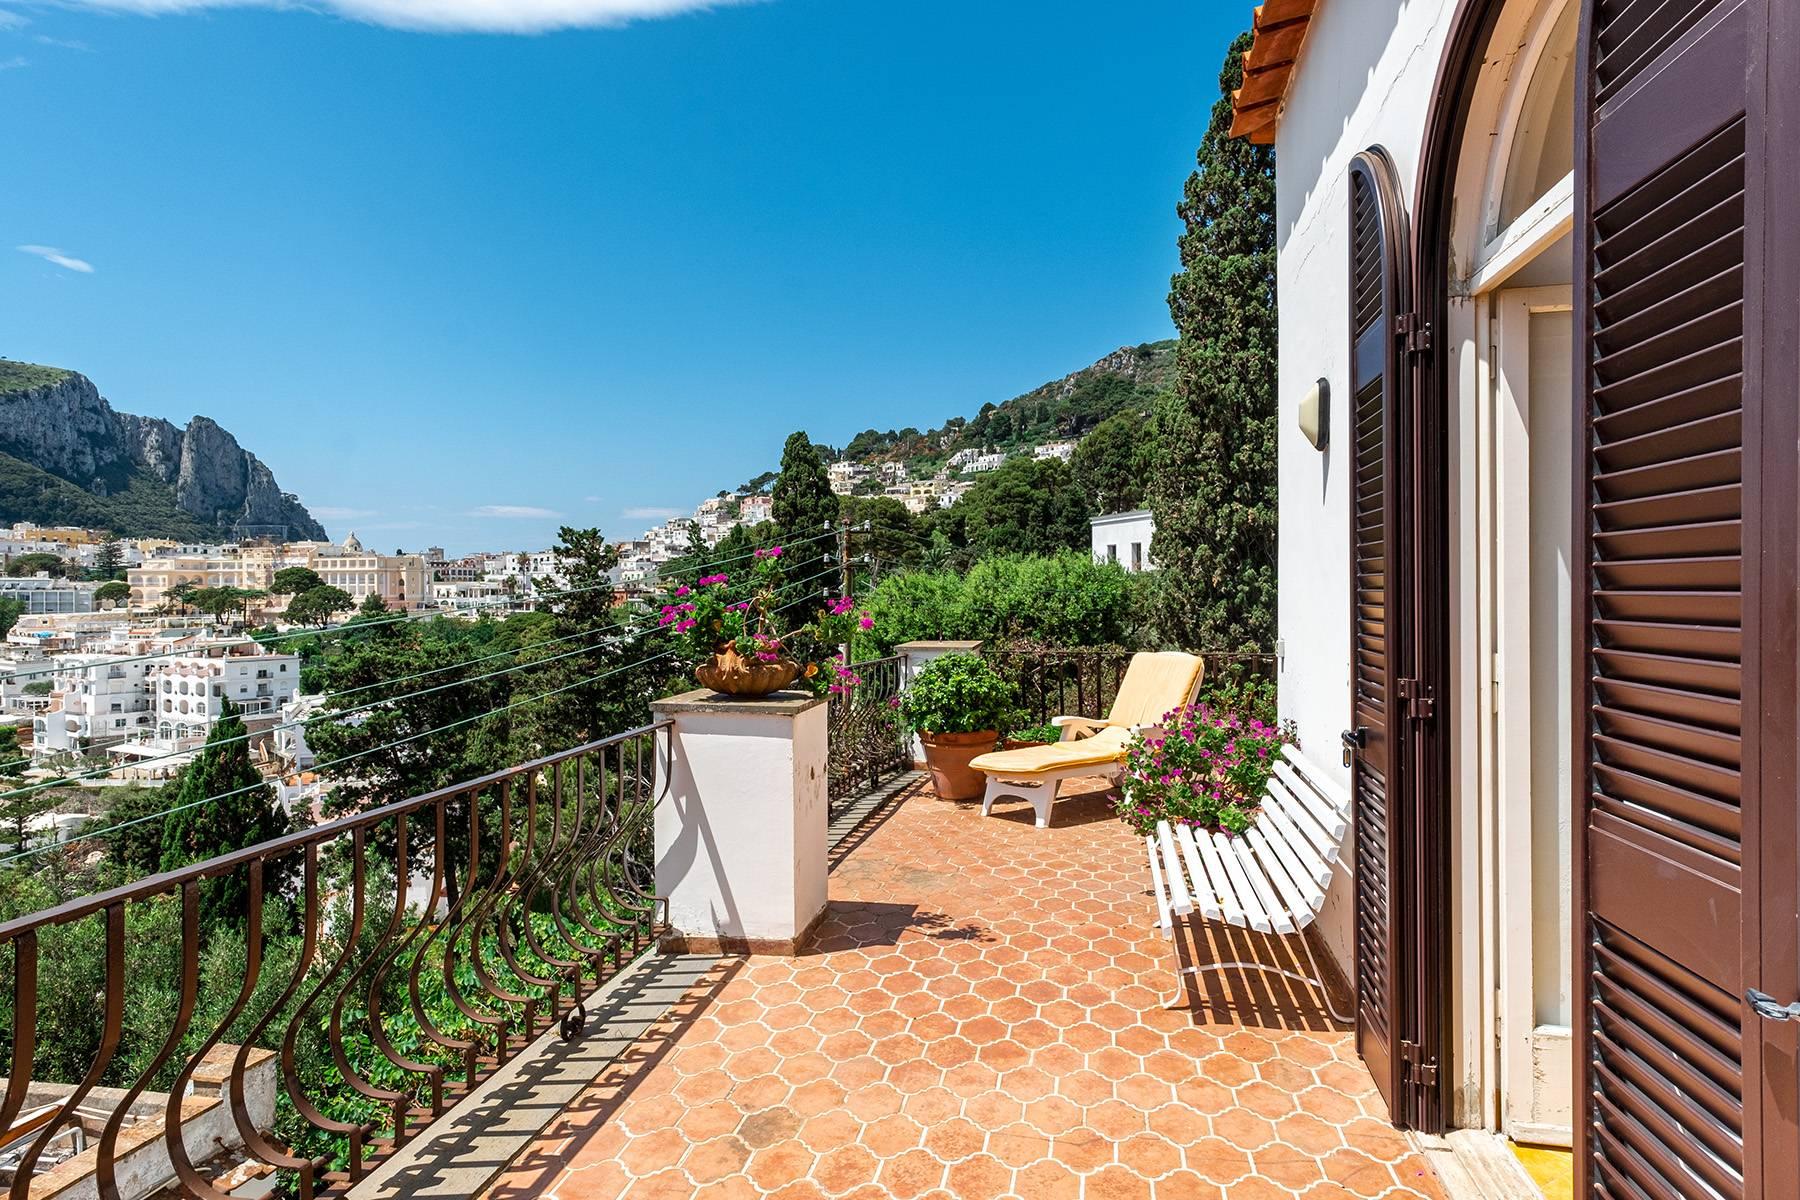 Magnificent villa in the center of Capri overlooking the sea - 21